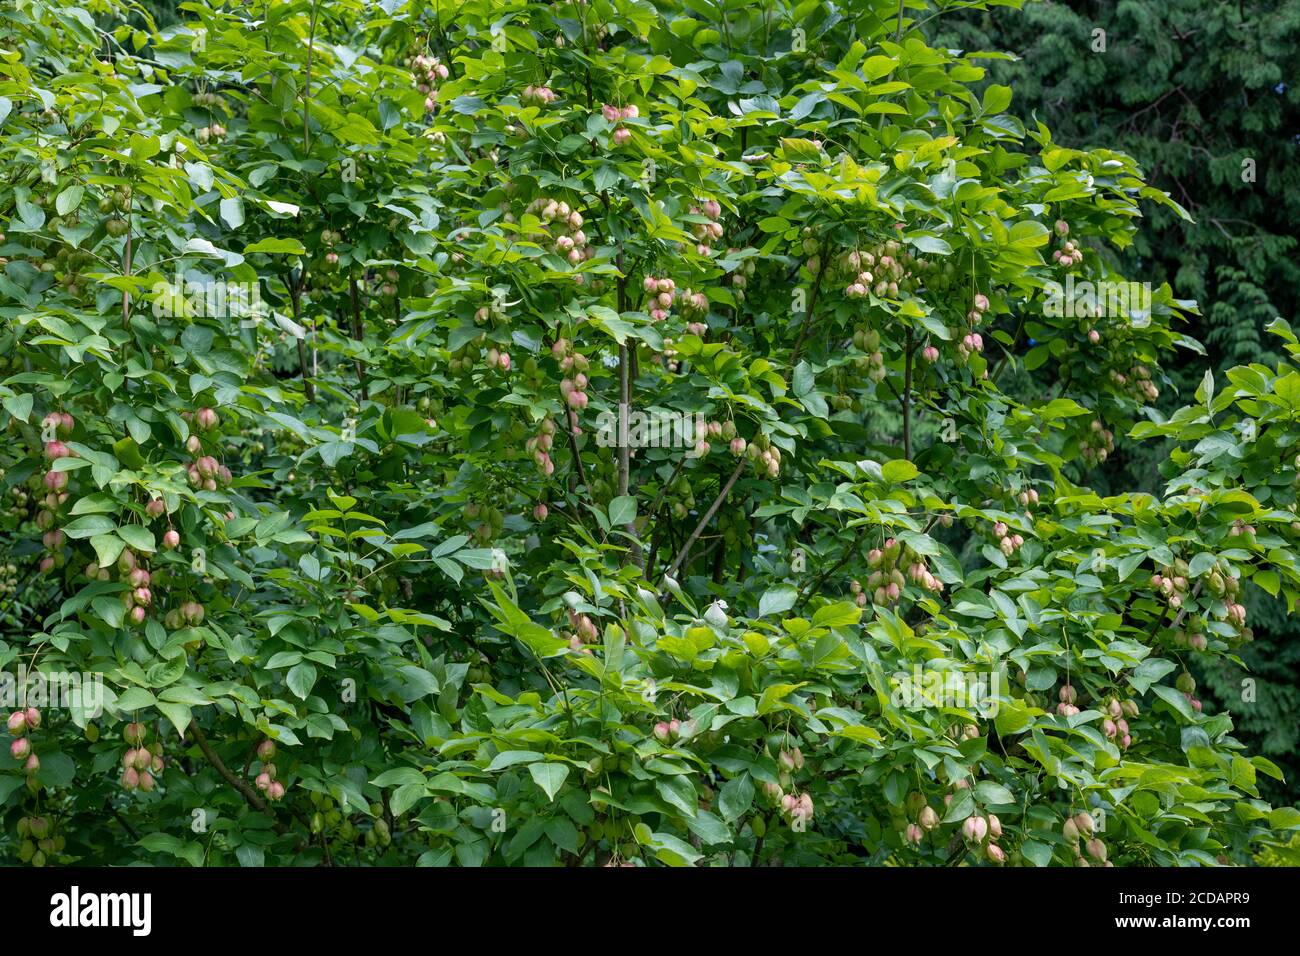 Nahaufnahme von Früchten auf einer Blasenmutter (Staphylea pinnata) Baum Stockfoto